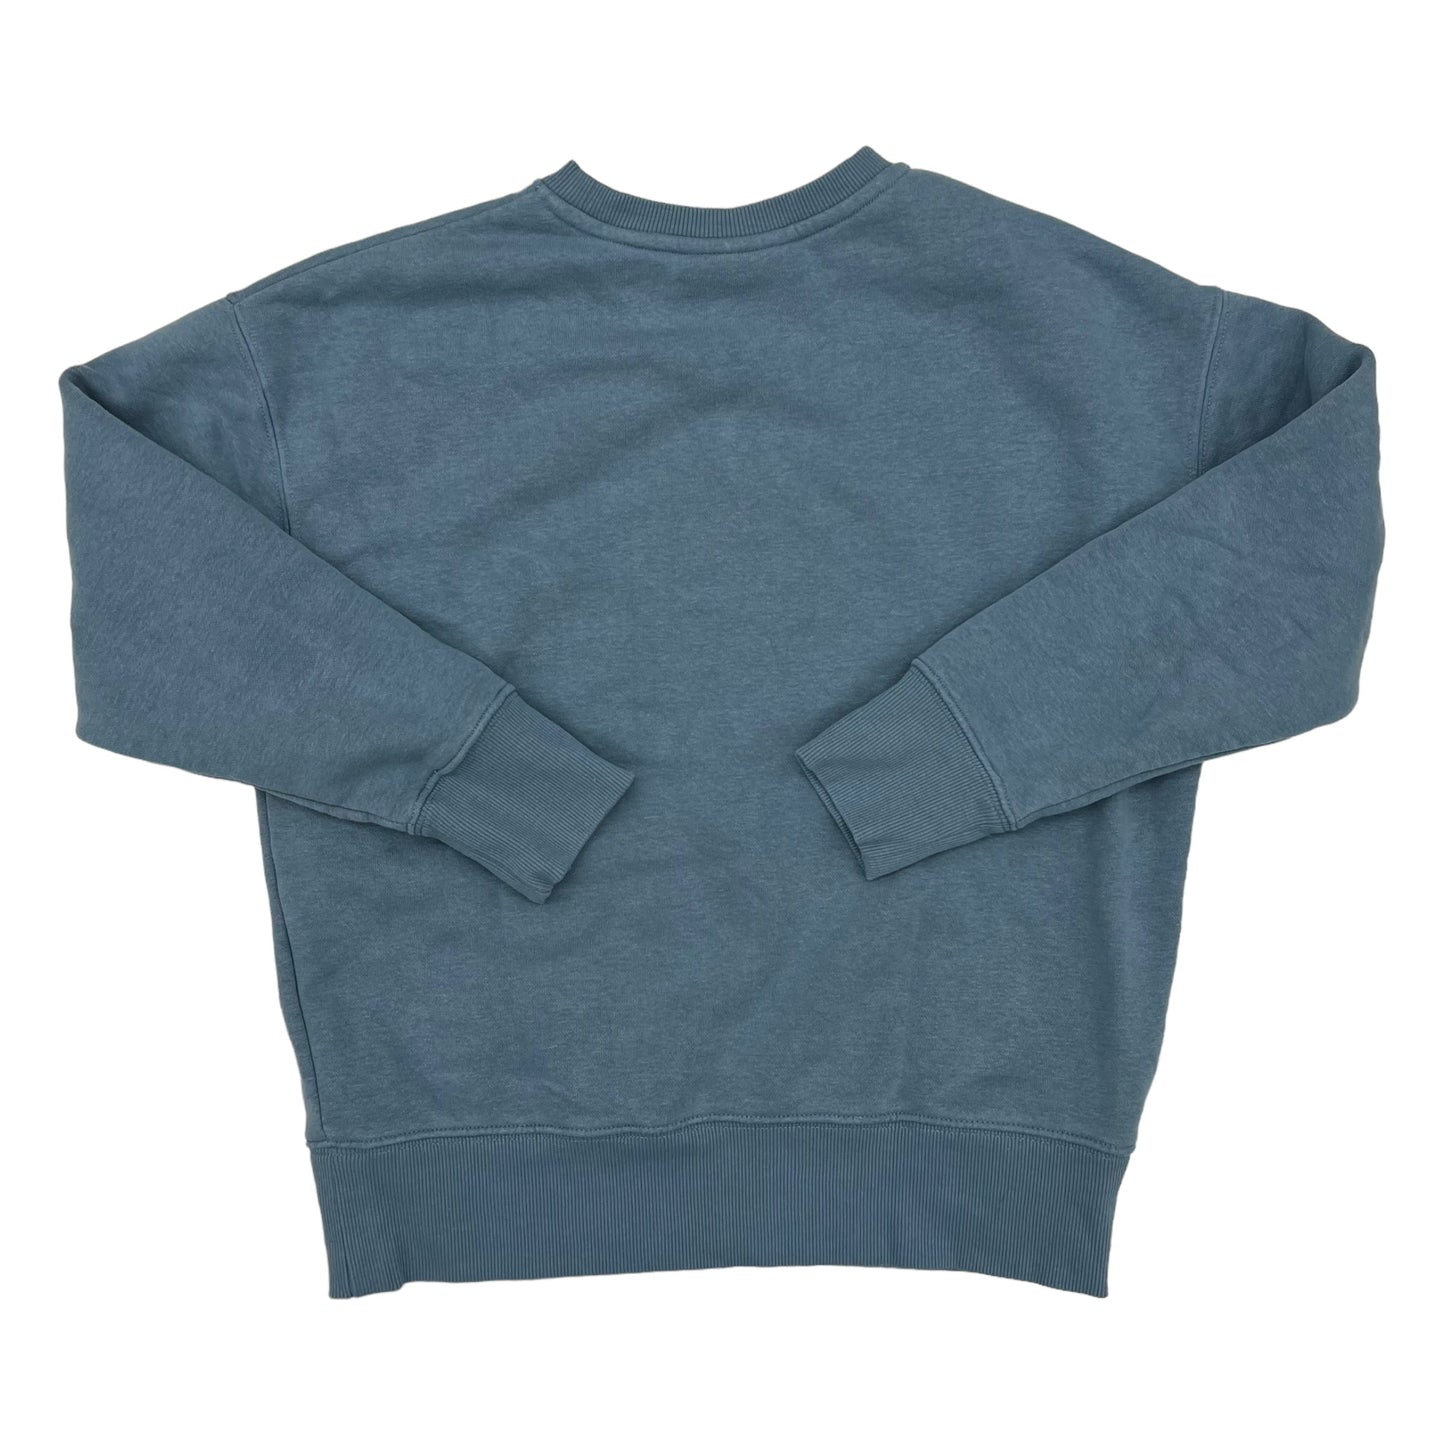 Sweatshirt Crewneck By Fila  Size: S